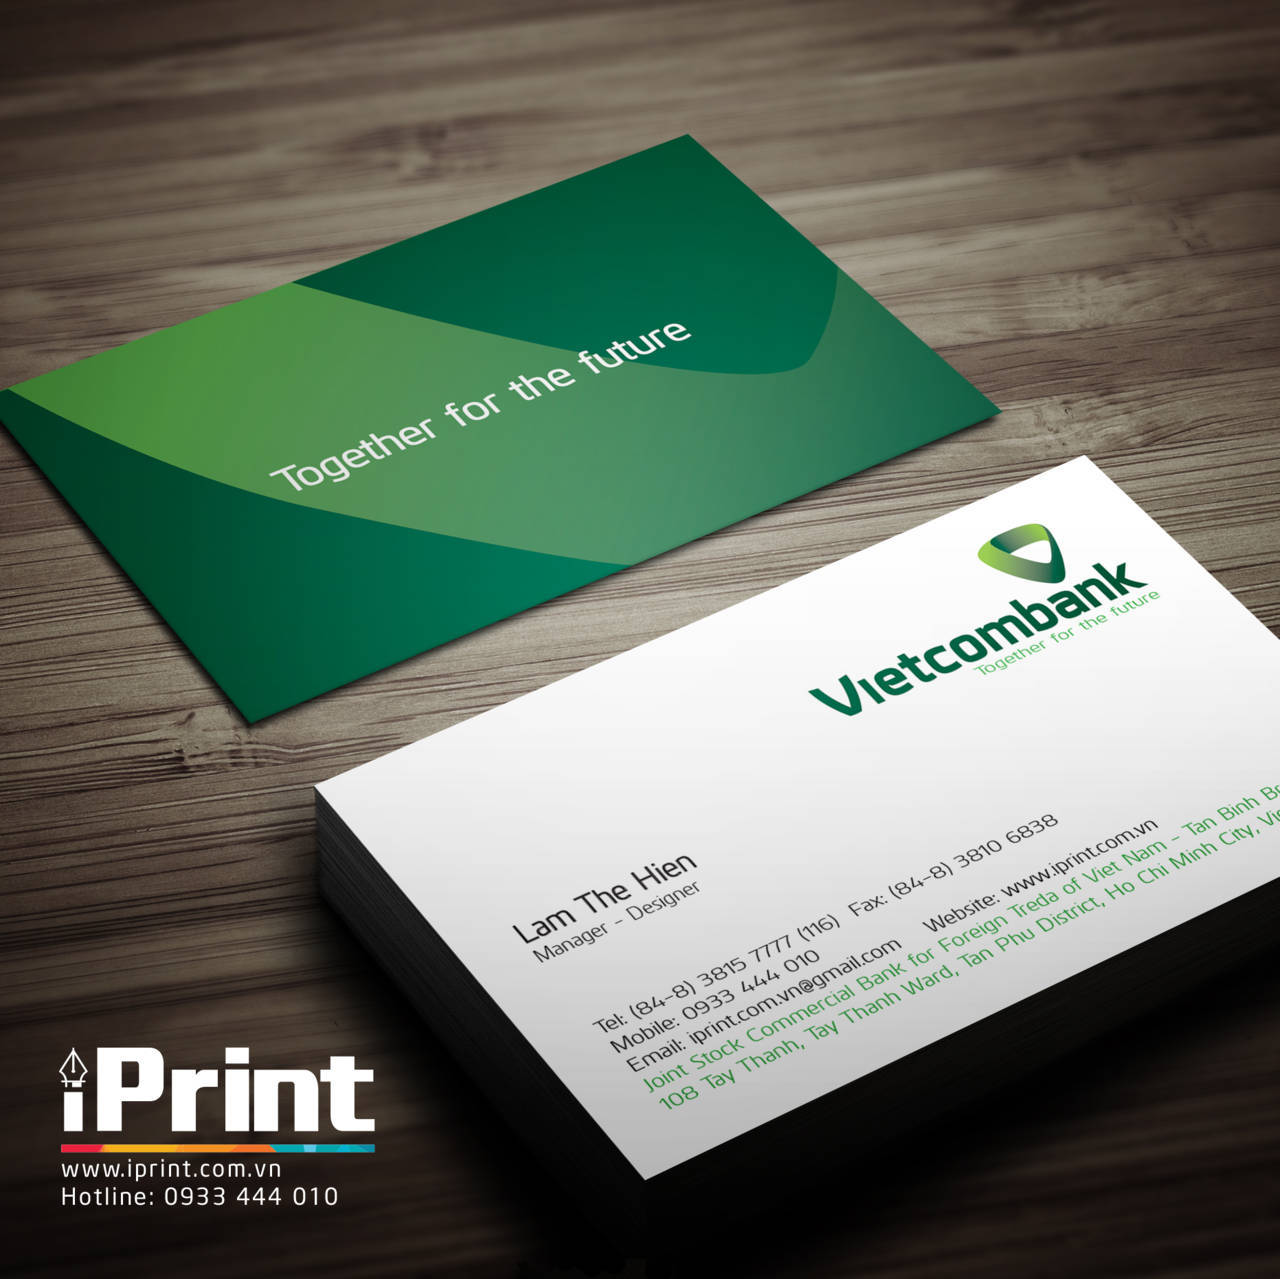 Name card ngân hàng Vietcombank